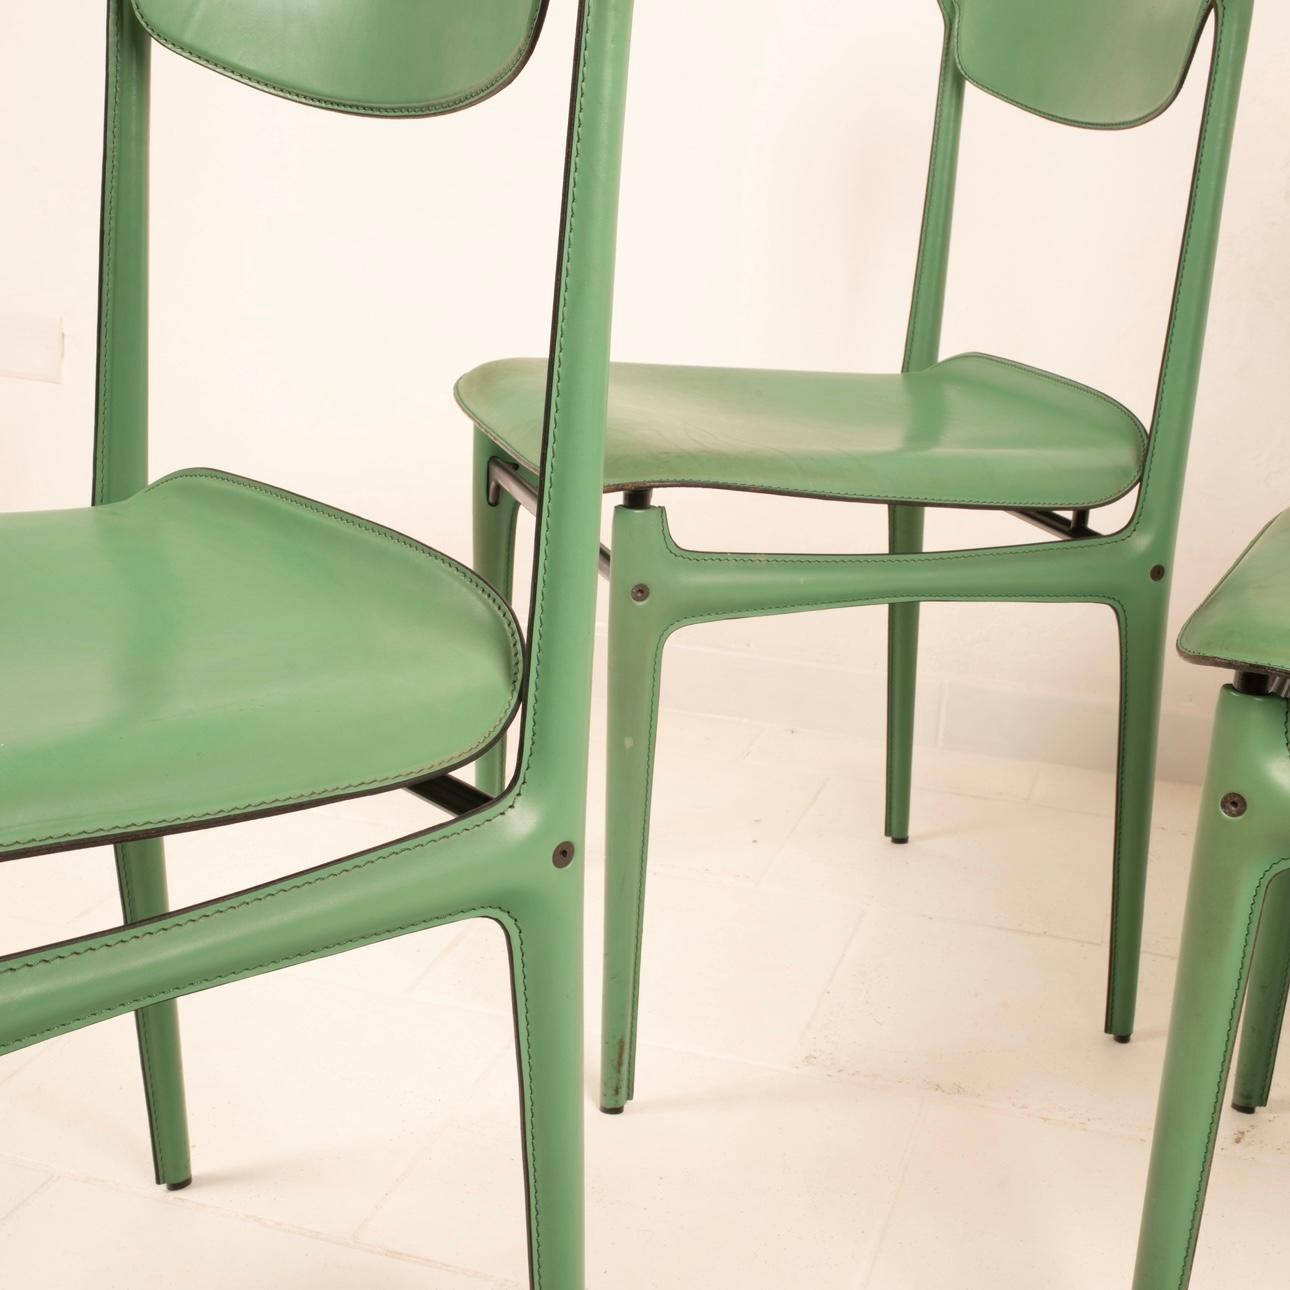 Extraordinaire et rare ensemble de 4 chaises en cuir sarcelle, conçu par Tito Agnoli et produit par Matteo Grassi. Les chaises sont recouvertes de cuir de haute qualité, avec des détails et des coutures raffinés qui leur confèrent une élégance